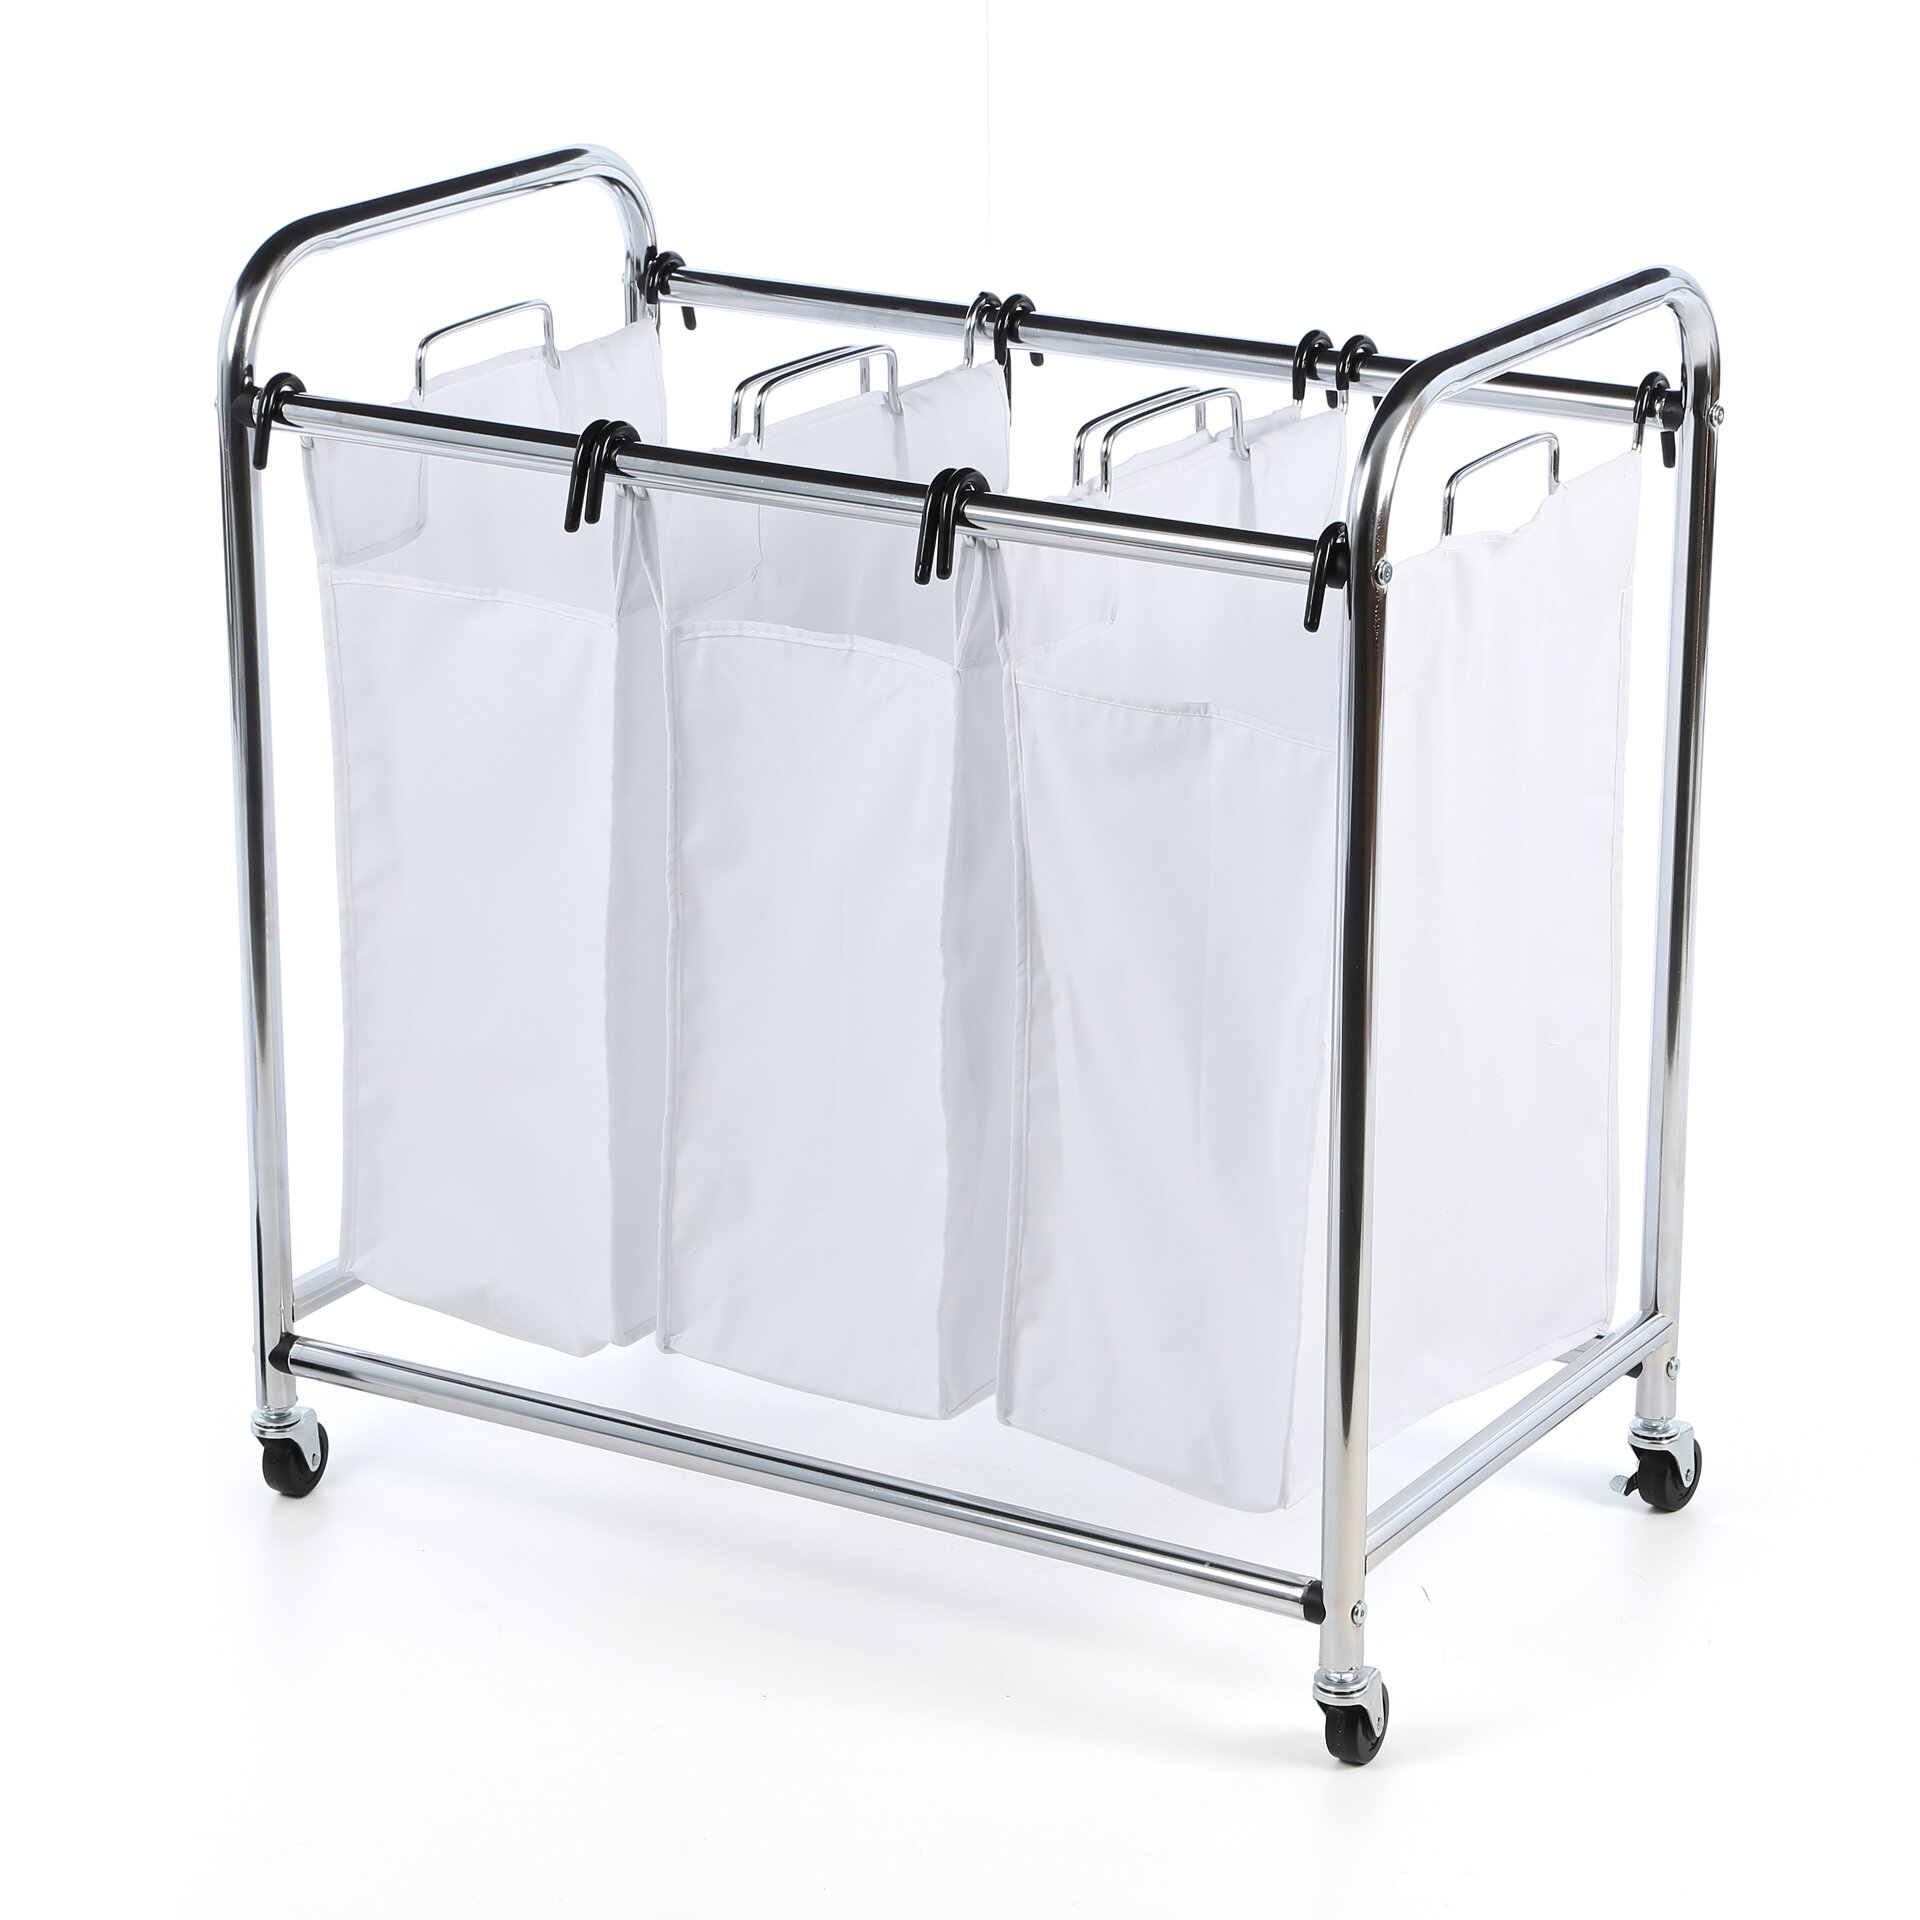 3 Bag Laundry Sorter Hamper Basket Rolling Cart Lockable Trolley Heavy Duty for sale online 